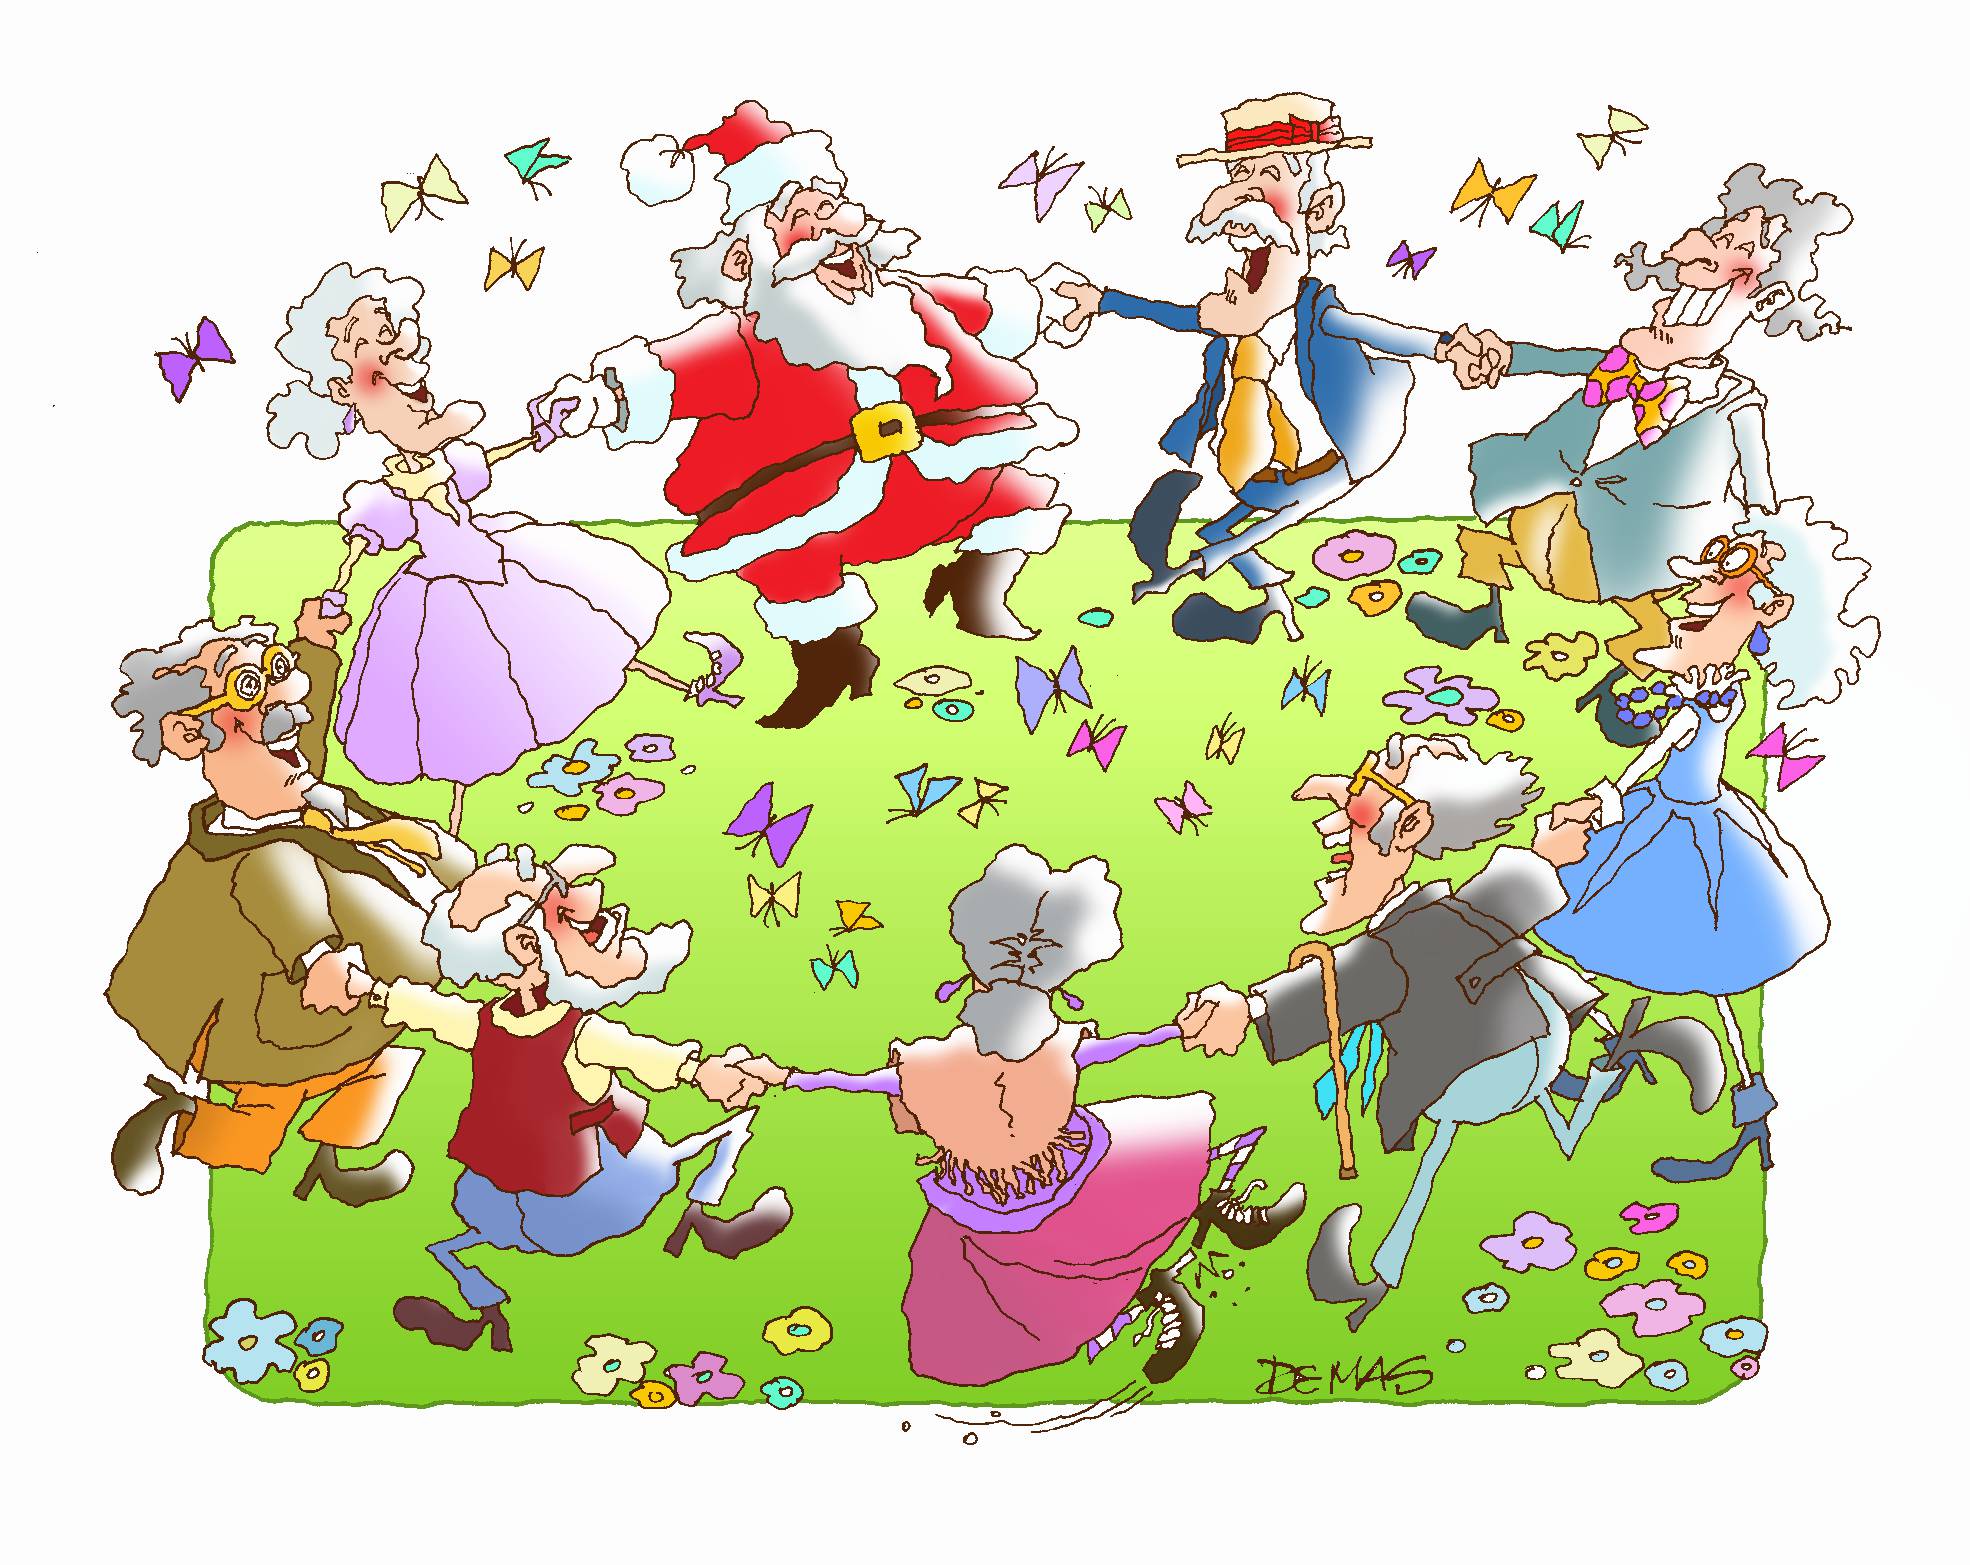 #mercychristmas  Auguri a tutti da “Viva gli Anziani!” per un Natale di Misericordia